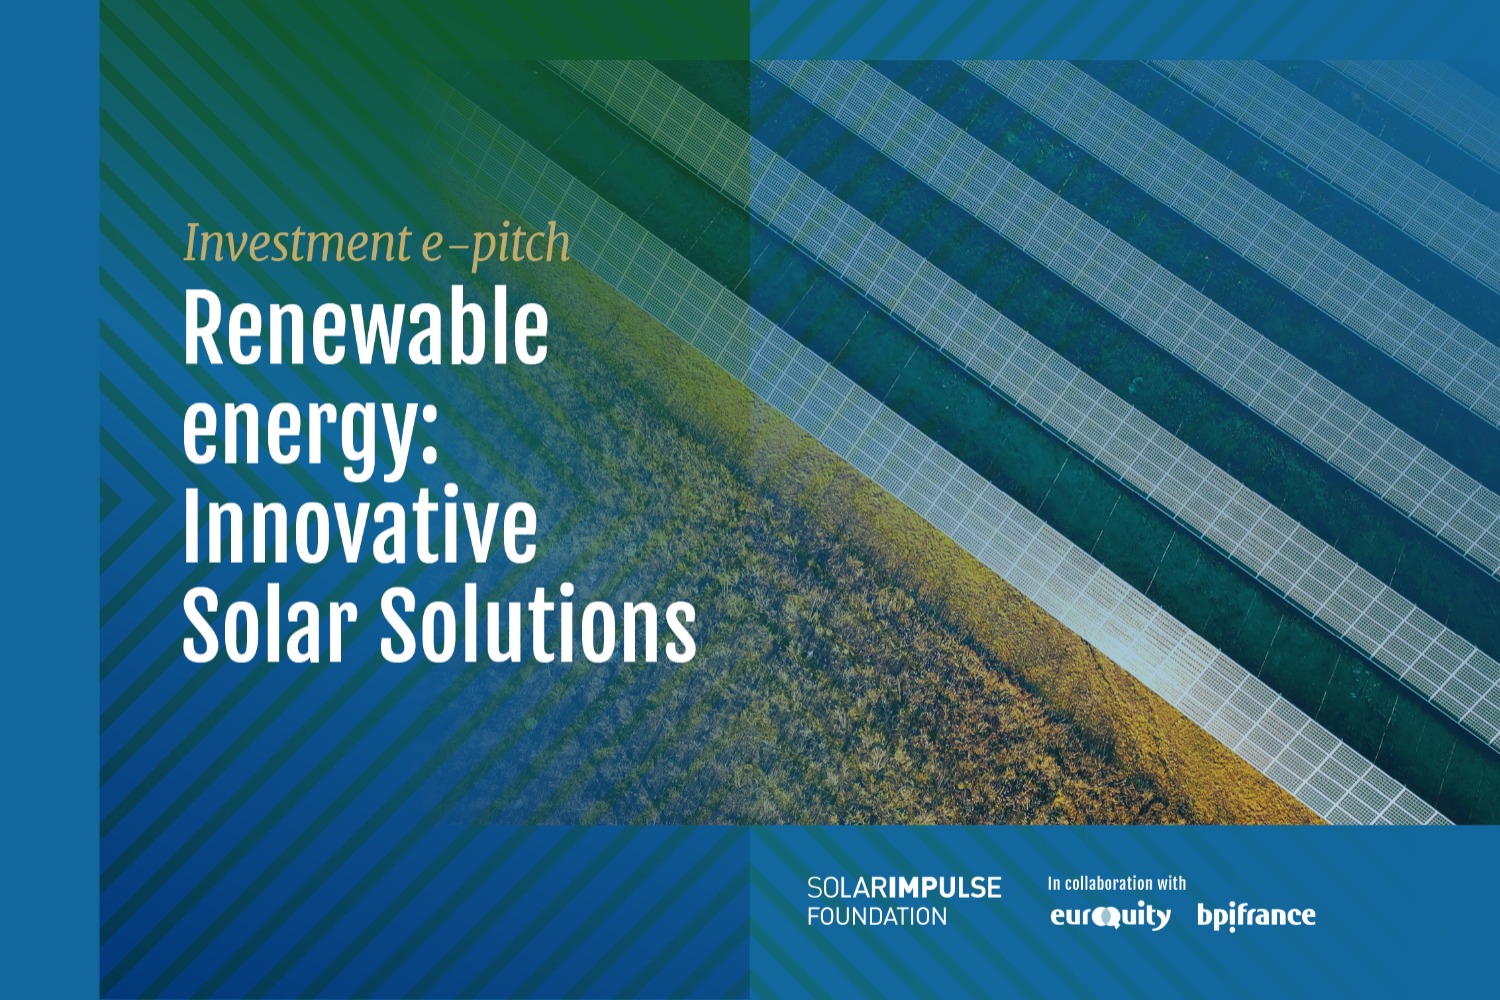 E-Pitch Solar Impulse Investment - "Énergies renouvelables : des solutions solaires innovantes". 